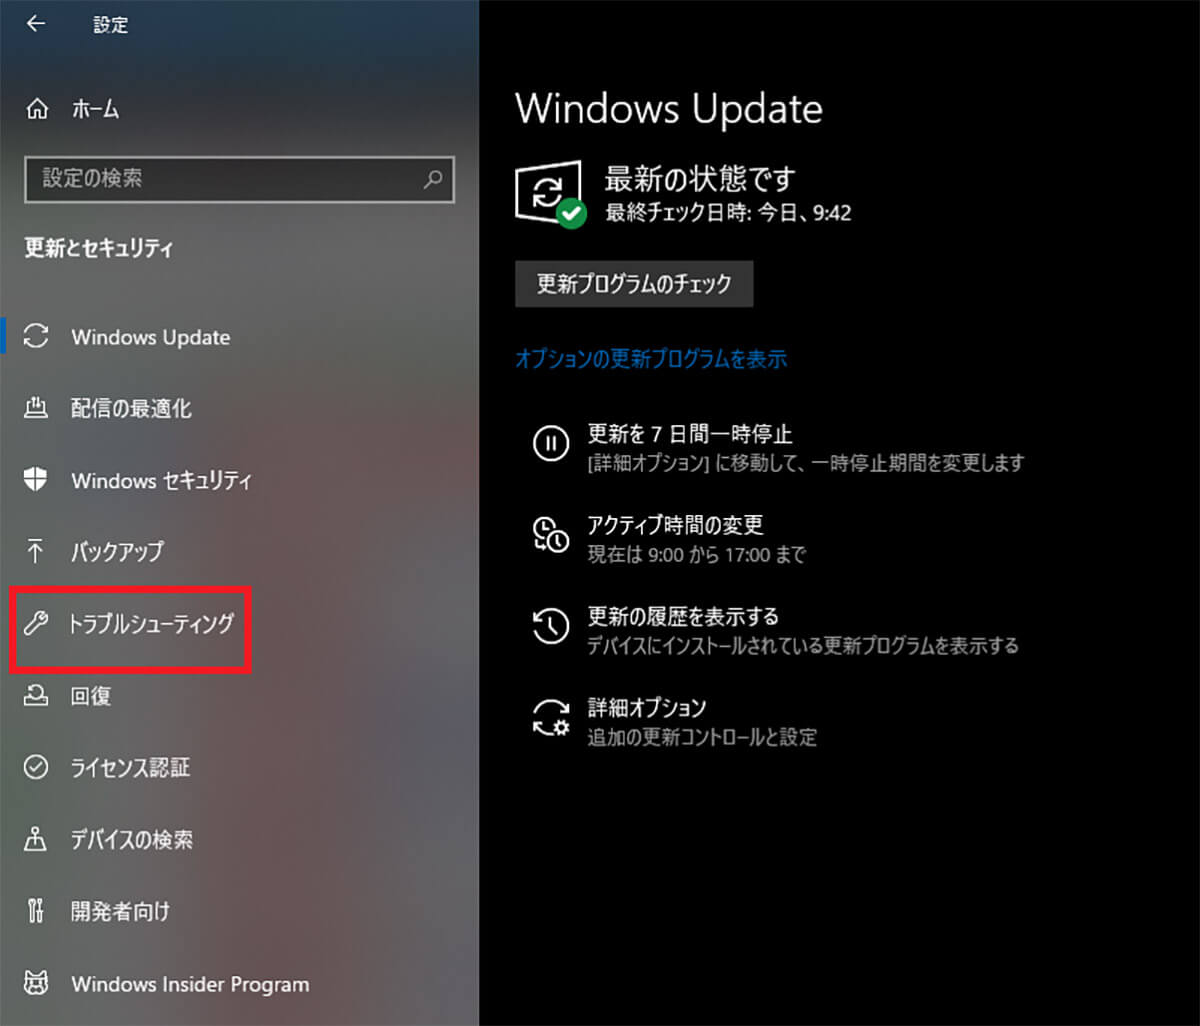 【対処法③】Windows Updateのトラブルシューティングツールを実行する3